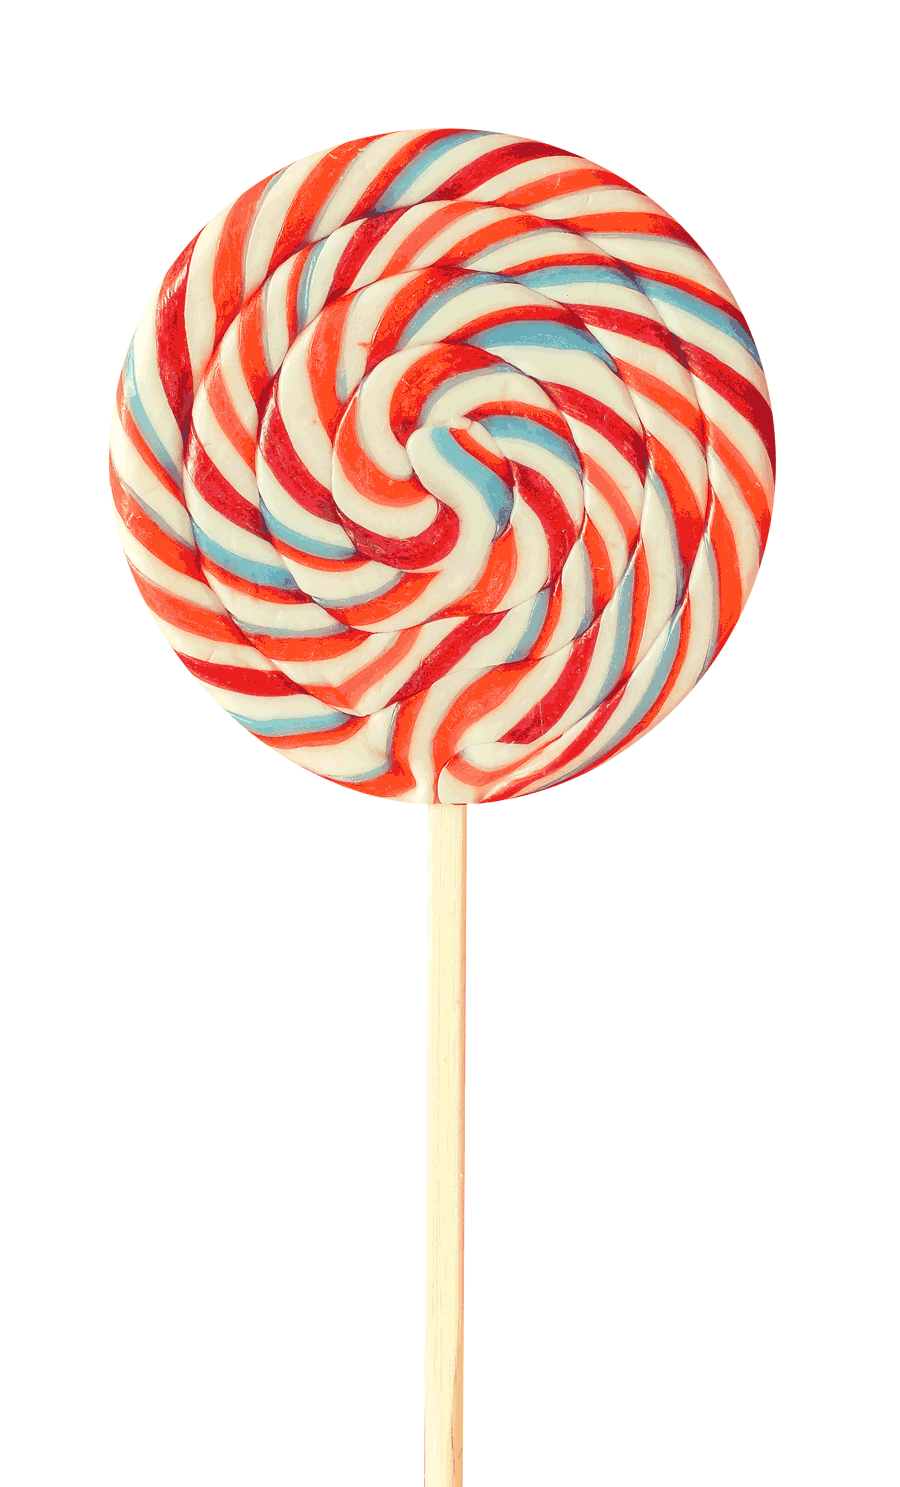 https://micholove.com/wp-content/uploads/2017/08/lollipop.gif